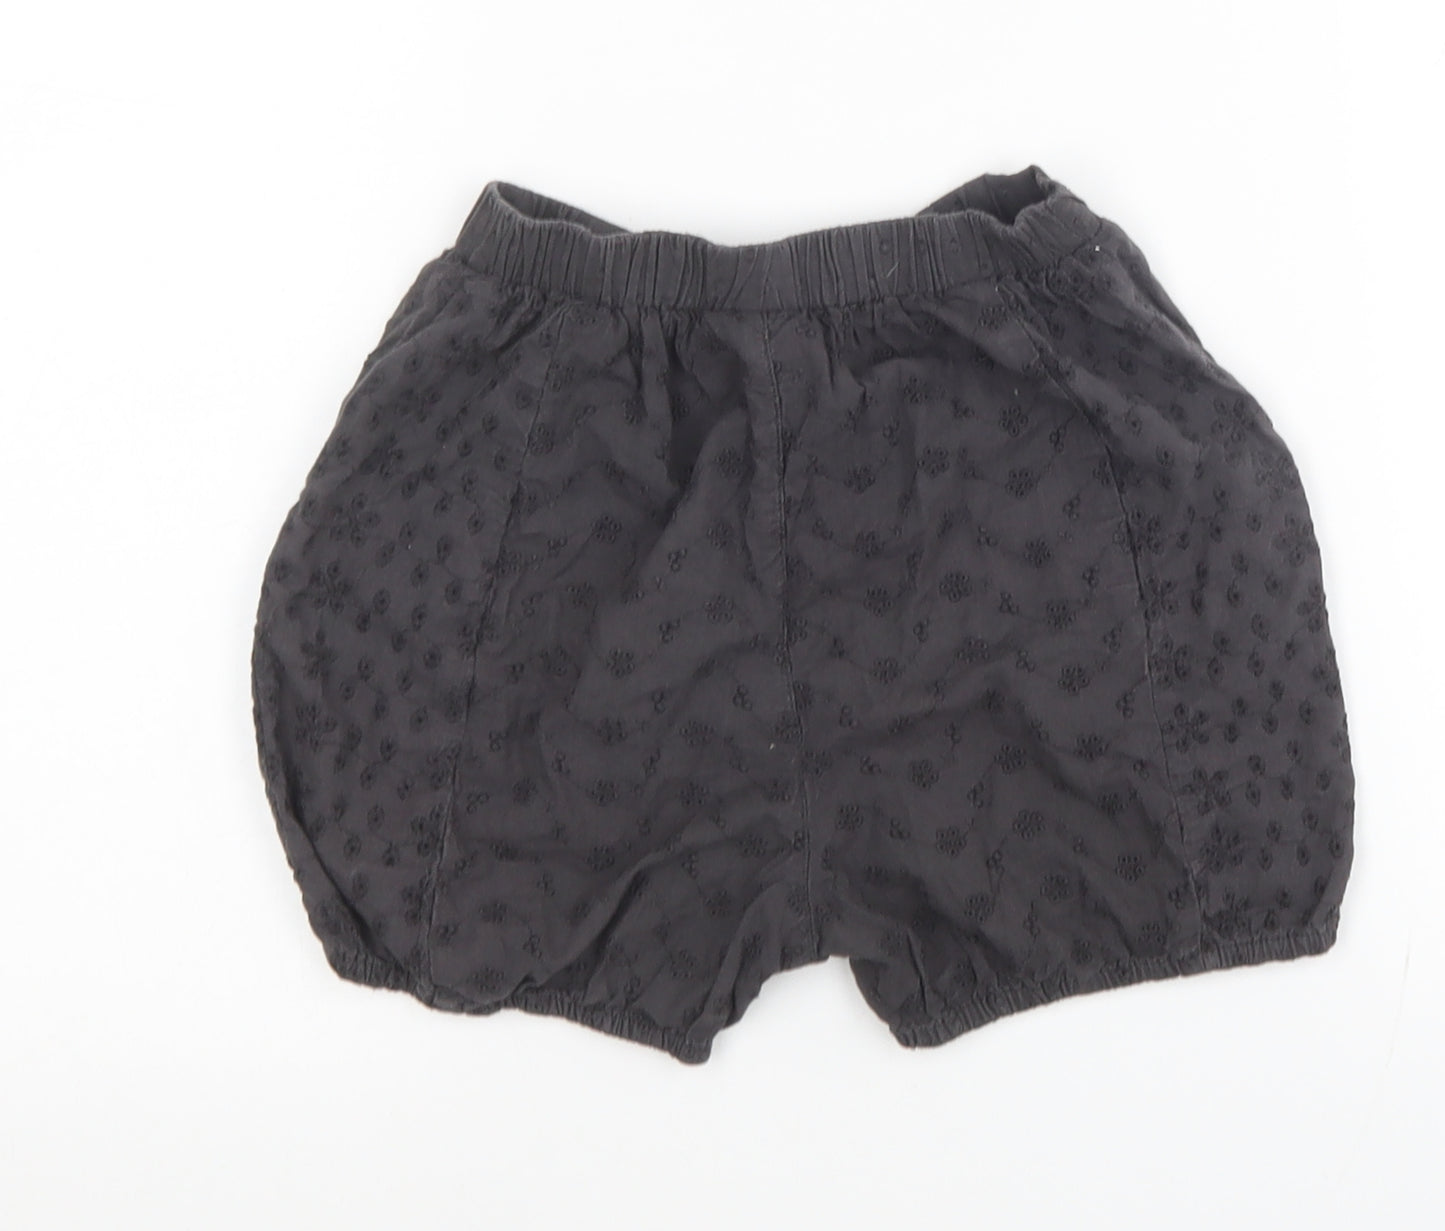 NEXT Girls Black Cotton Bermuda Shorts Size 5-6 Years Regular